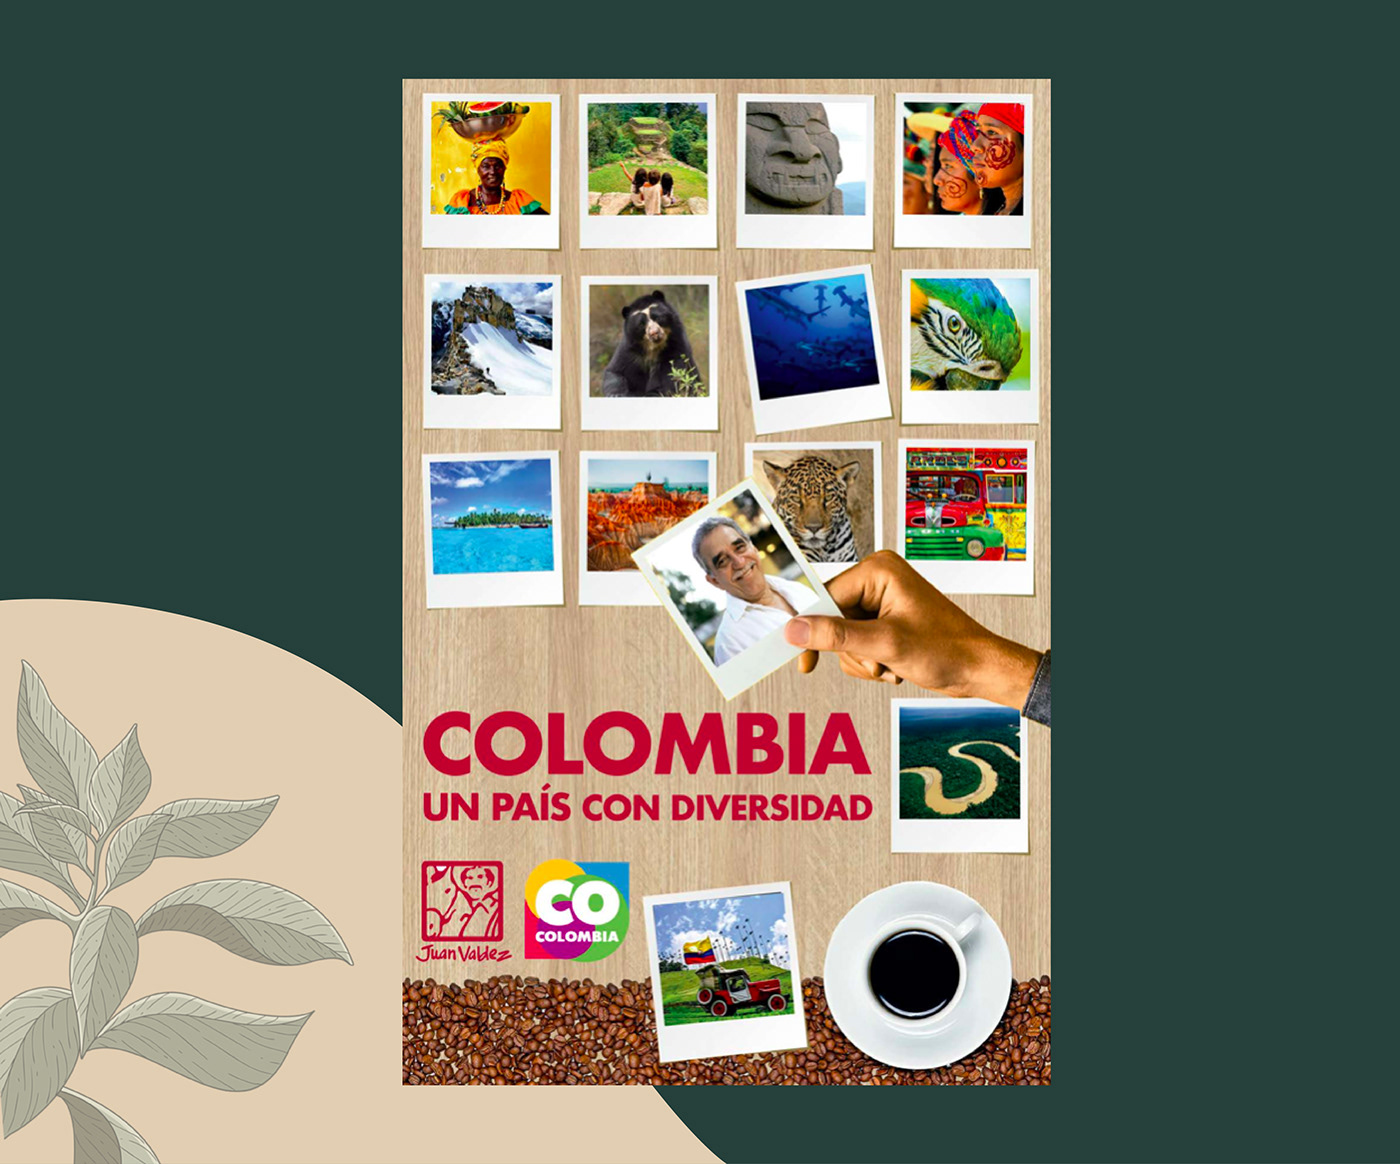 Biodiversidad colombia diversidad lugares naturaleza pais places region